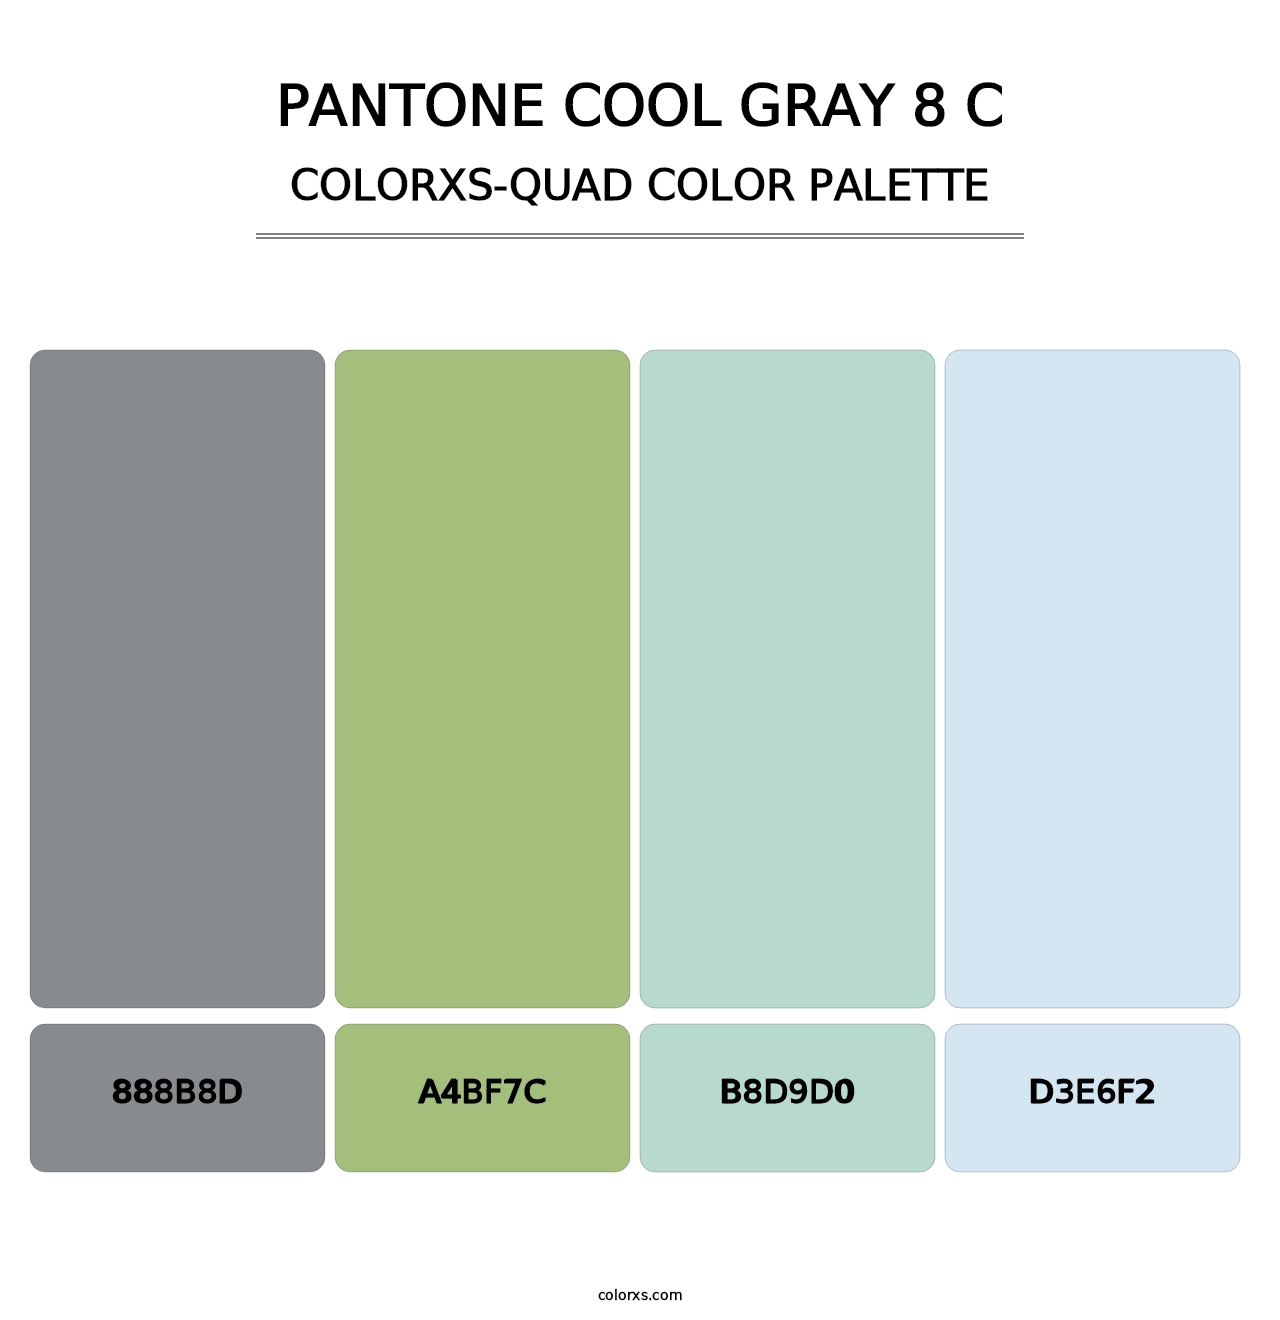 PANTONE Cool Gray 8 C - Colorxs Quad Palette